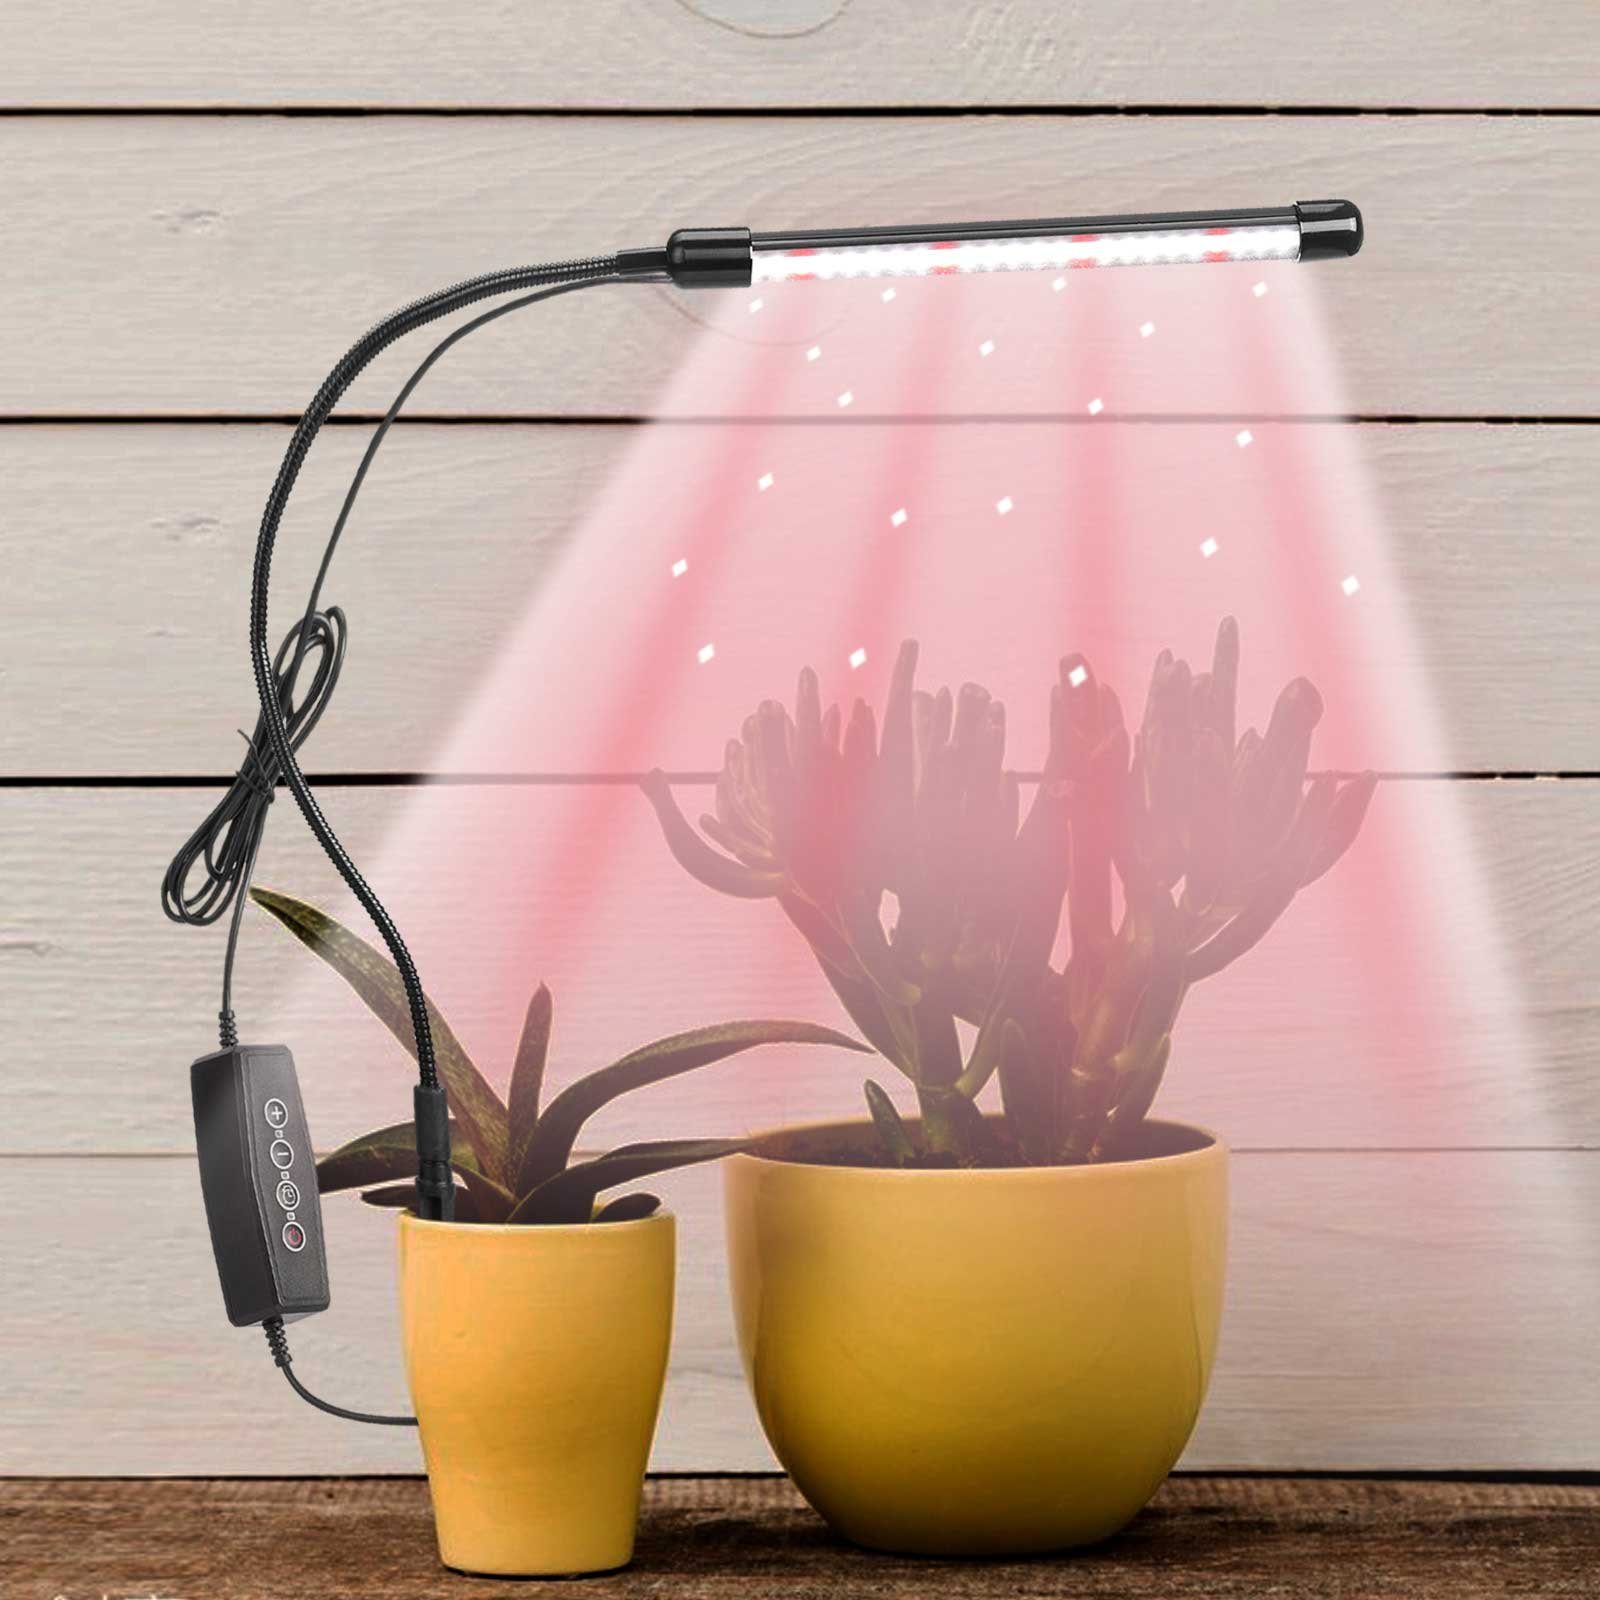 Rosnek Pflanzenlampe Dimmbar, 360° flexibel, für Zimmerpflanzen Setzlinge Blume Sukkulente, Rot, Weiß, 8Rot+40Weiß LEDs, Timer